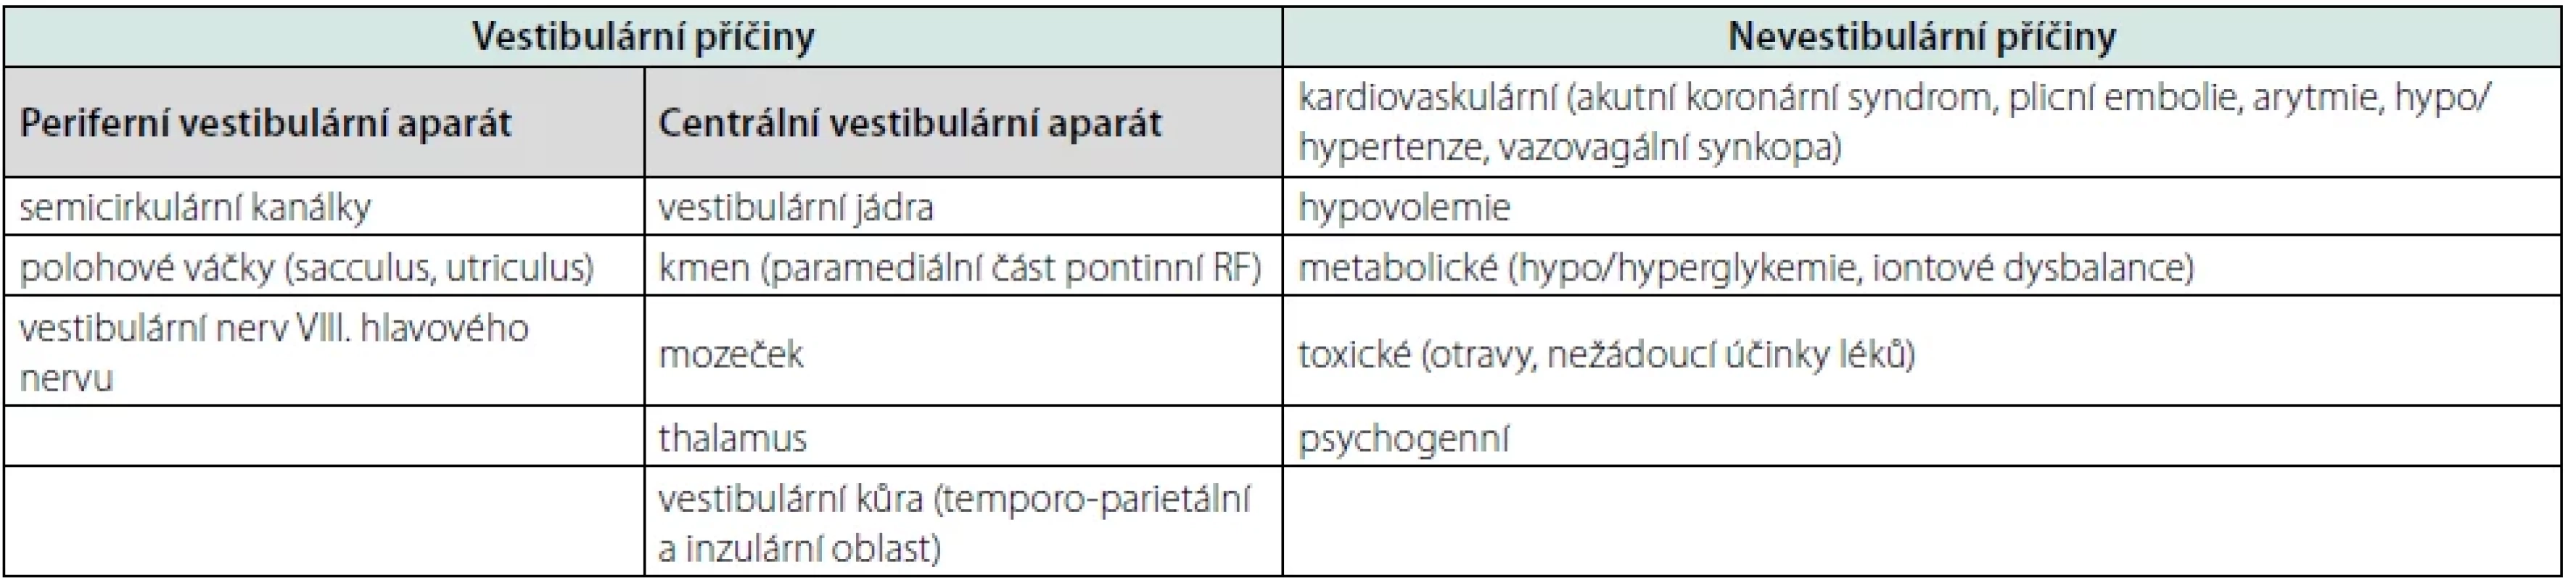 Vestibulární a nevestibulární příčiny závratí (upraveno dle příručky Akutní závrať, Koucký et al., 2022)